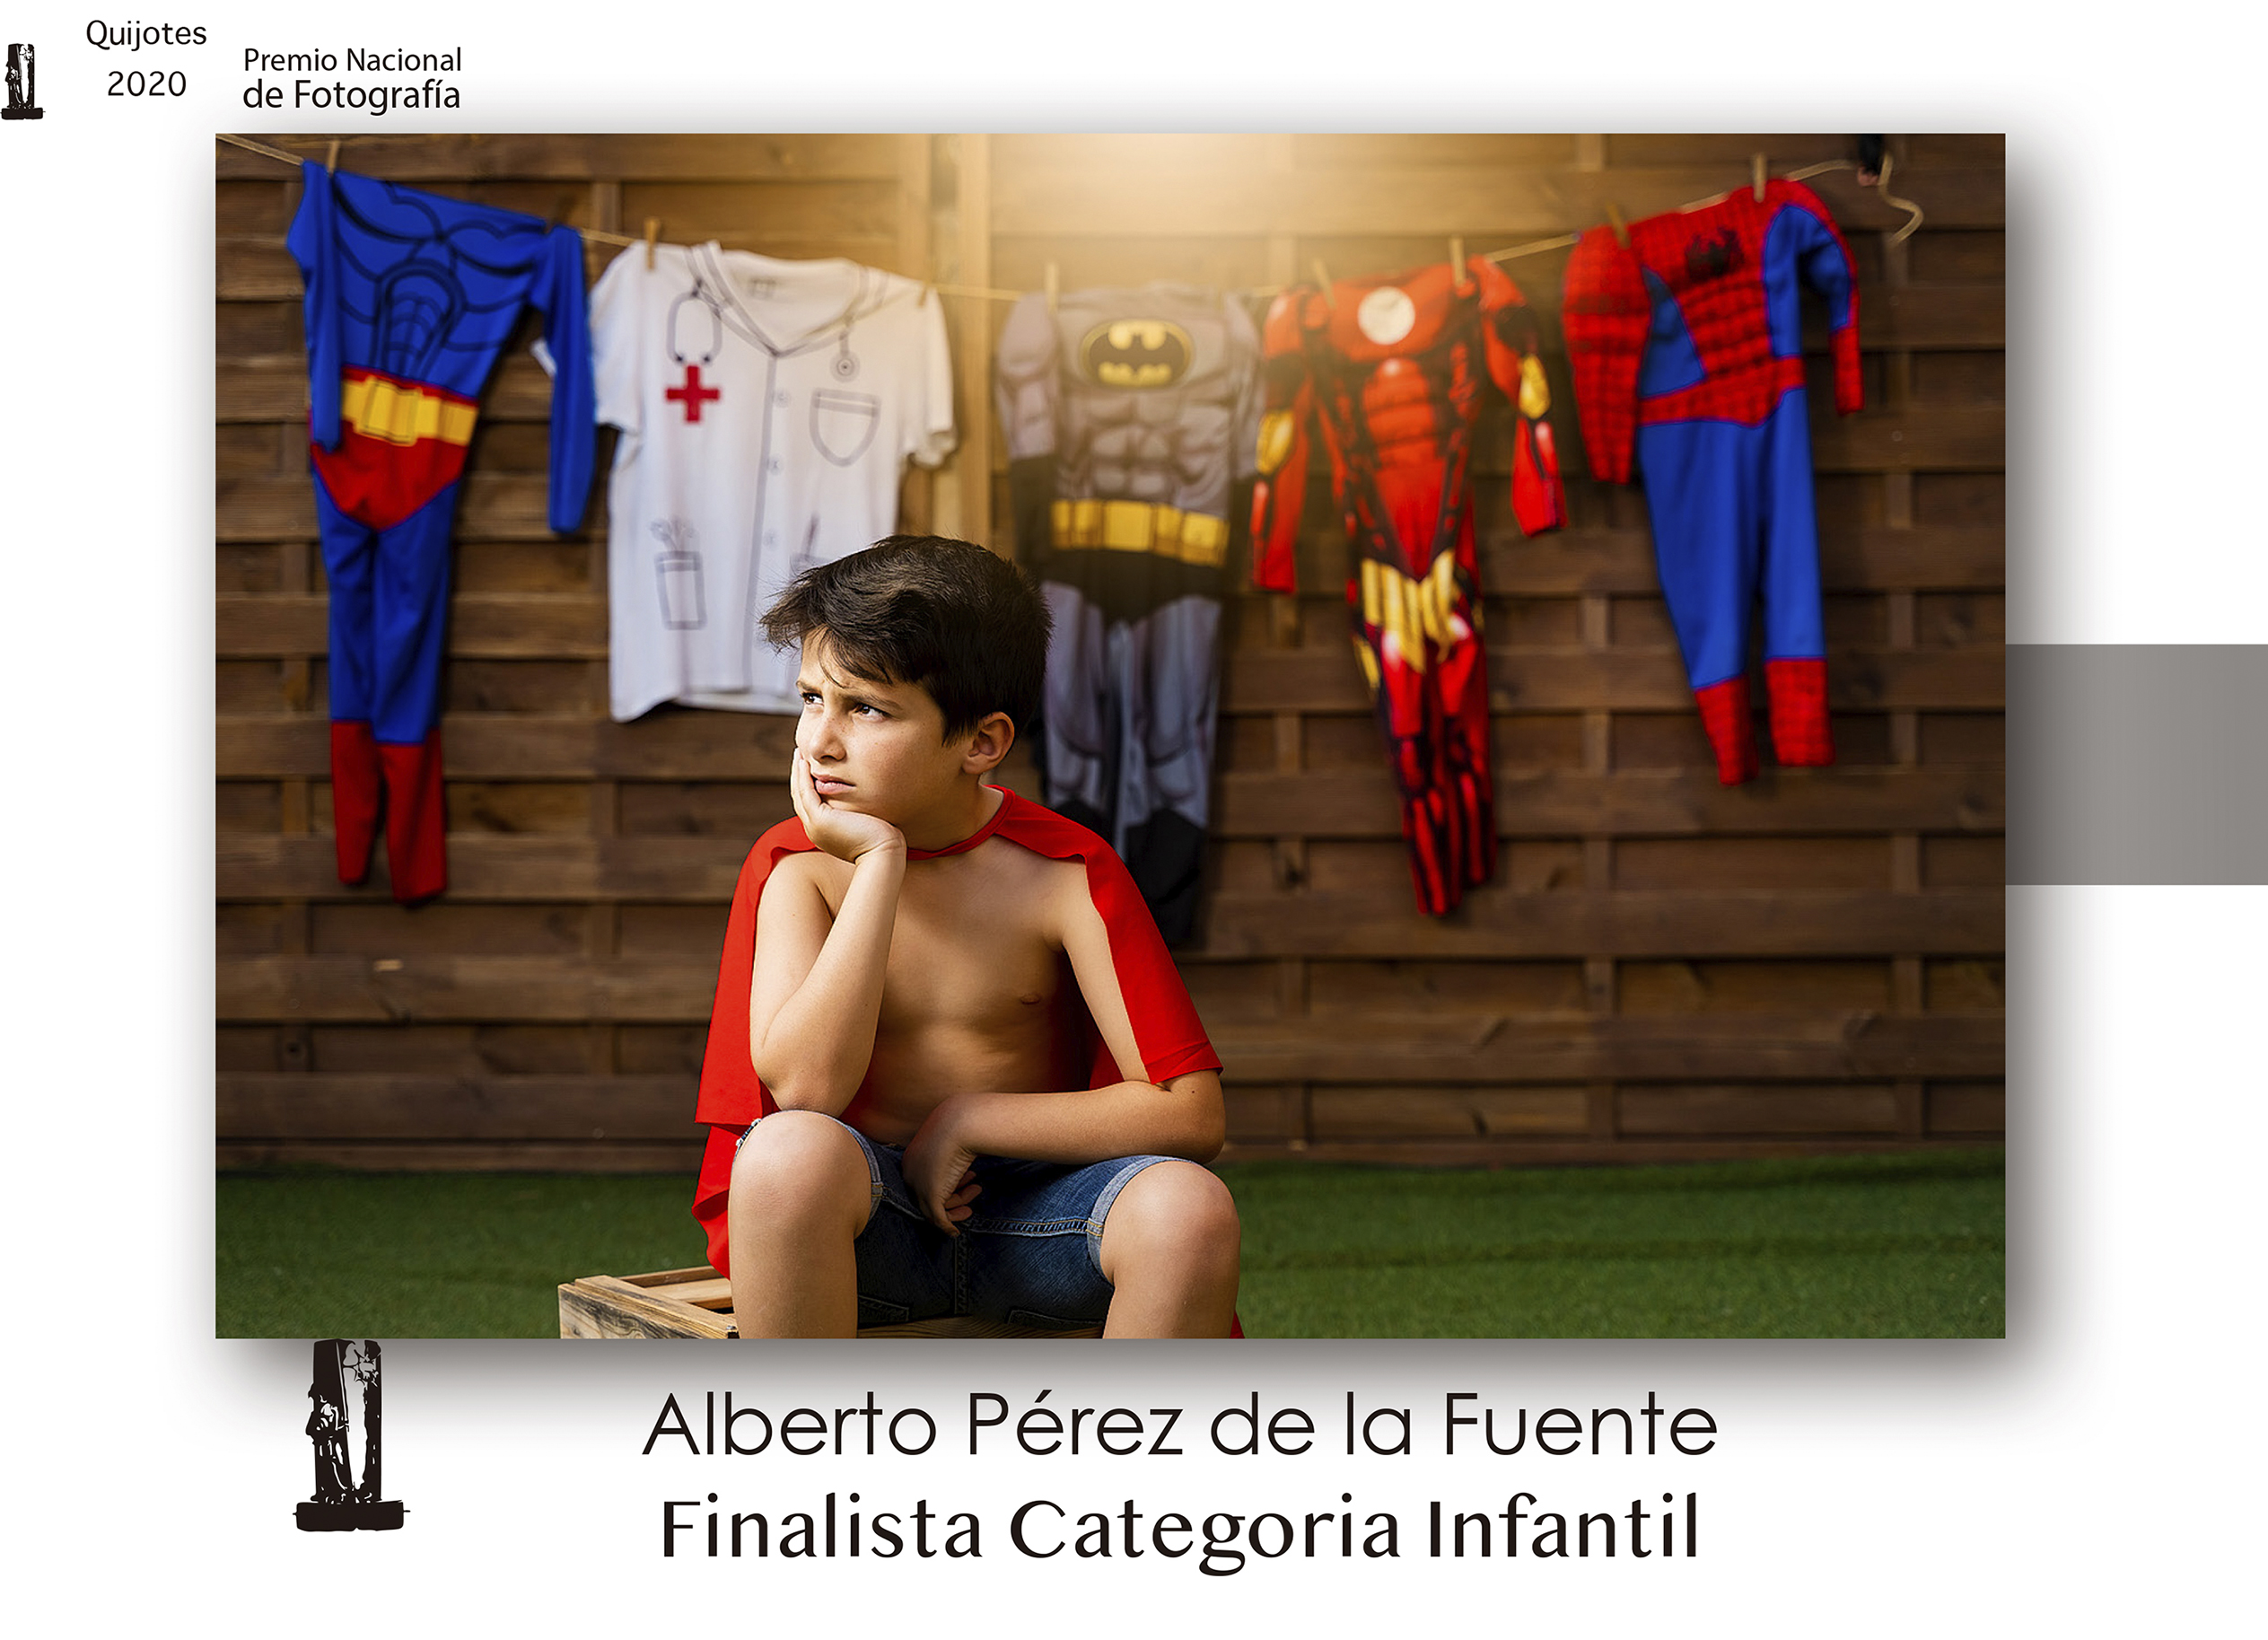 1º Premio Categoría Infantil - Alberto